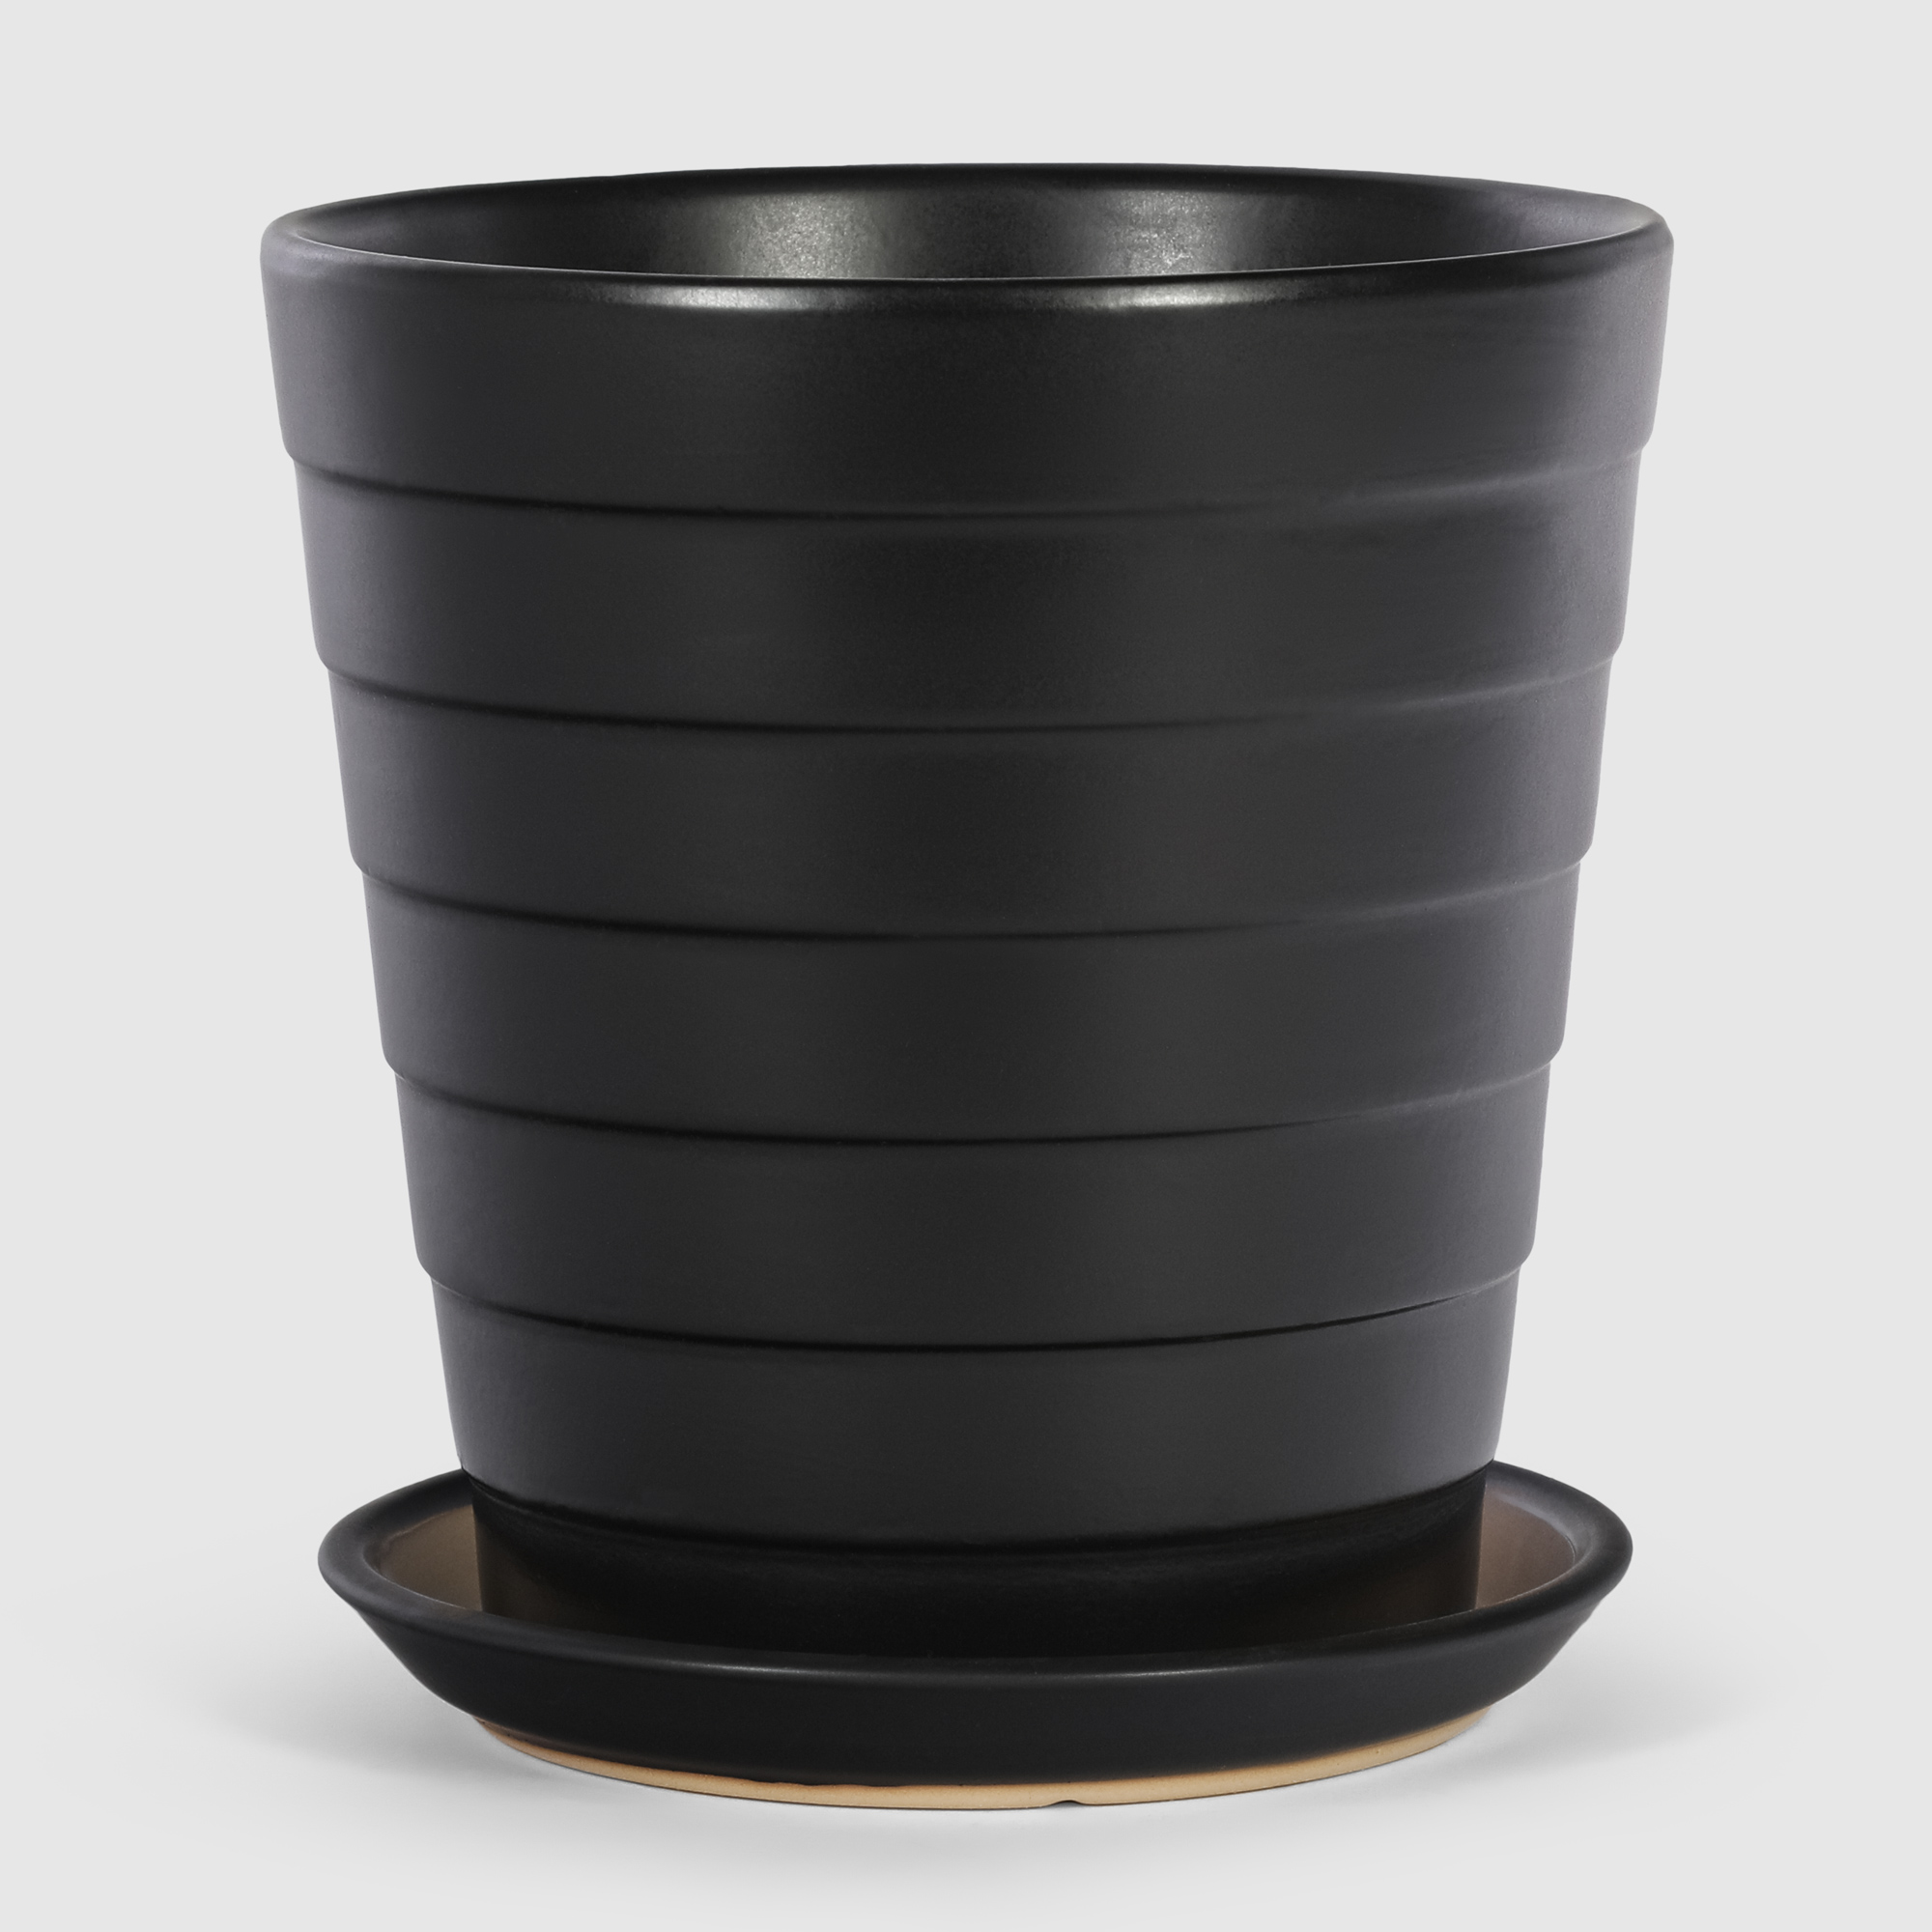 Кашпо керамическое для цветов Shine Pots 20x20см антрацит кашпо керамическое для ов shine pots 20x20см коричневый глянец